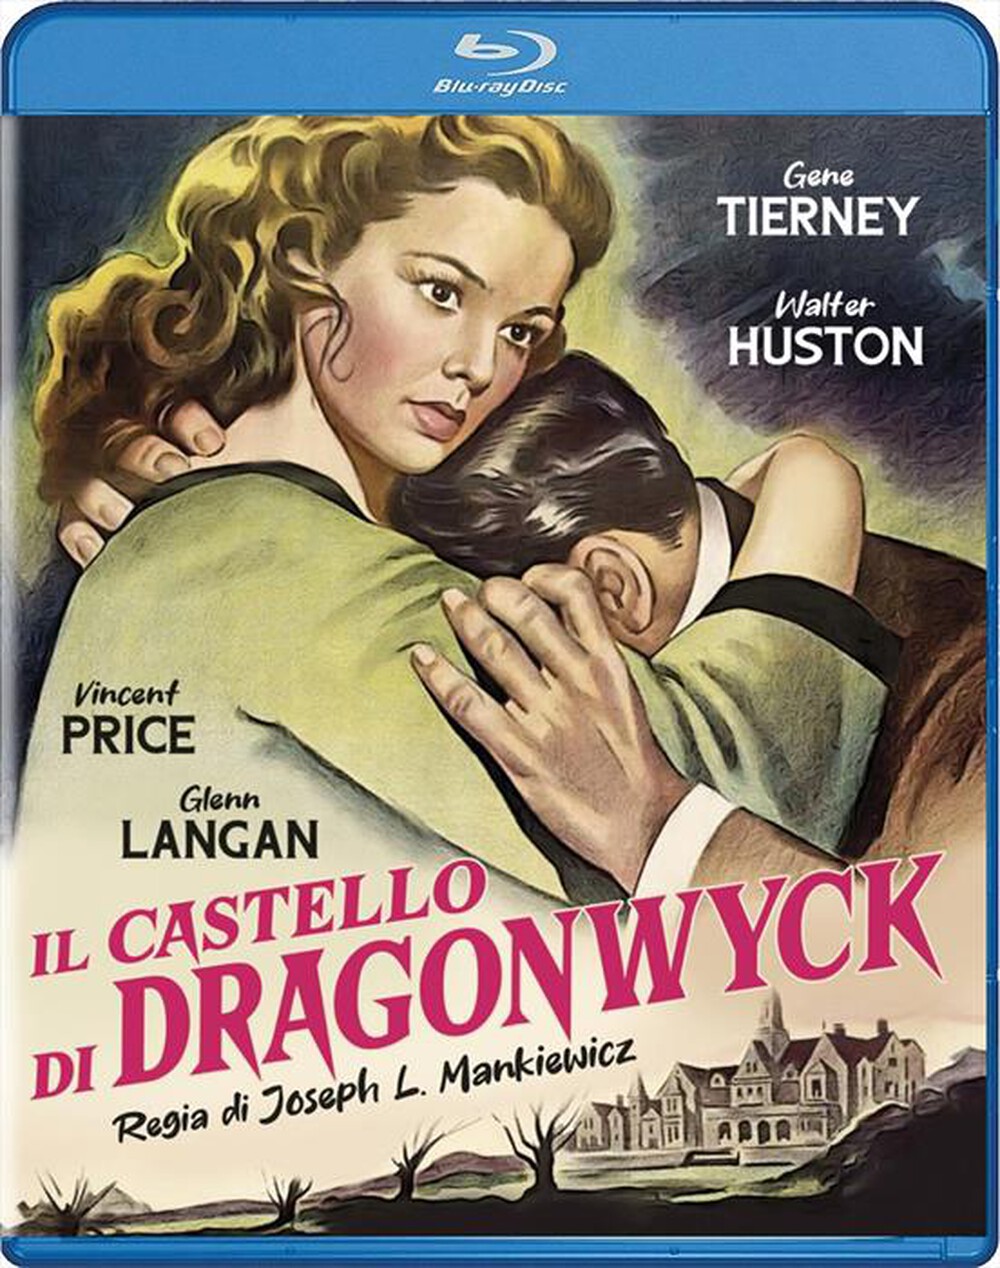 "A & R PRODUCTIONS - Castello Di Dragonwyck (Il)"